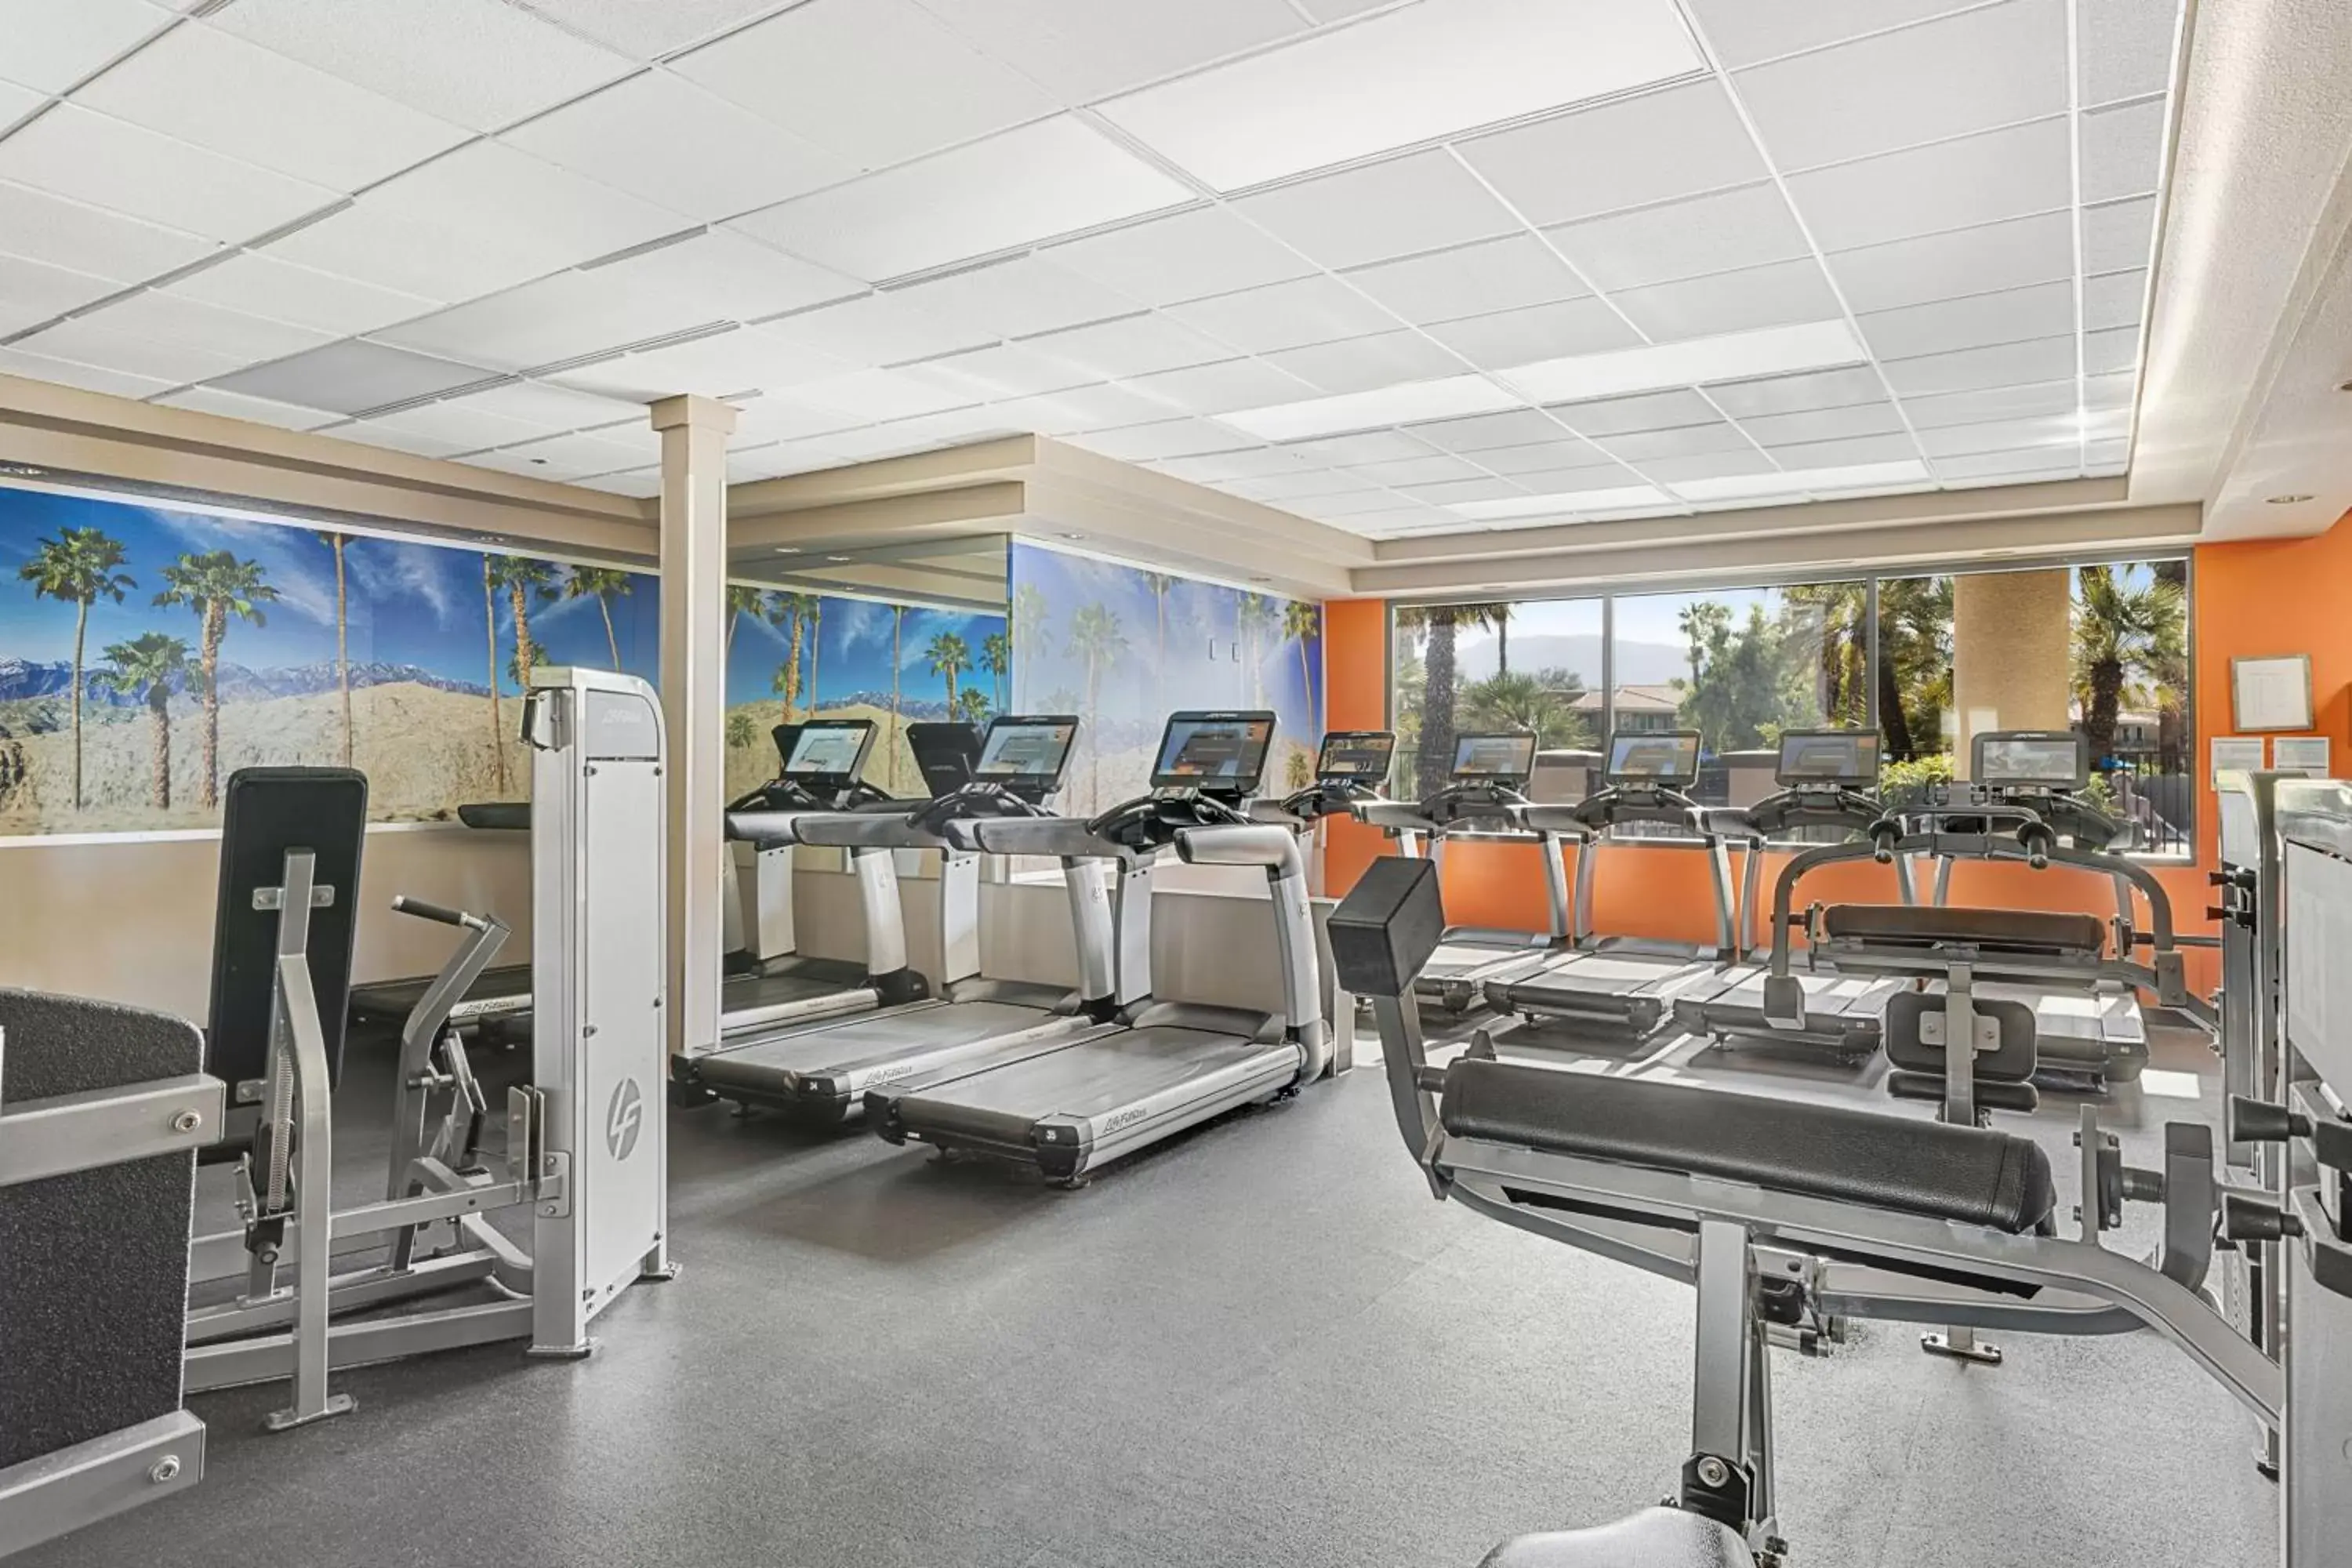 Fitness centre/facilities, Fitness Center/Facilities in Marriott's Desert Springs Villas I